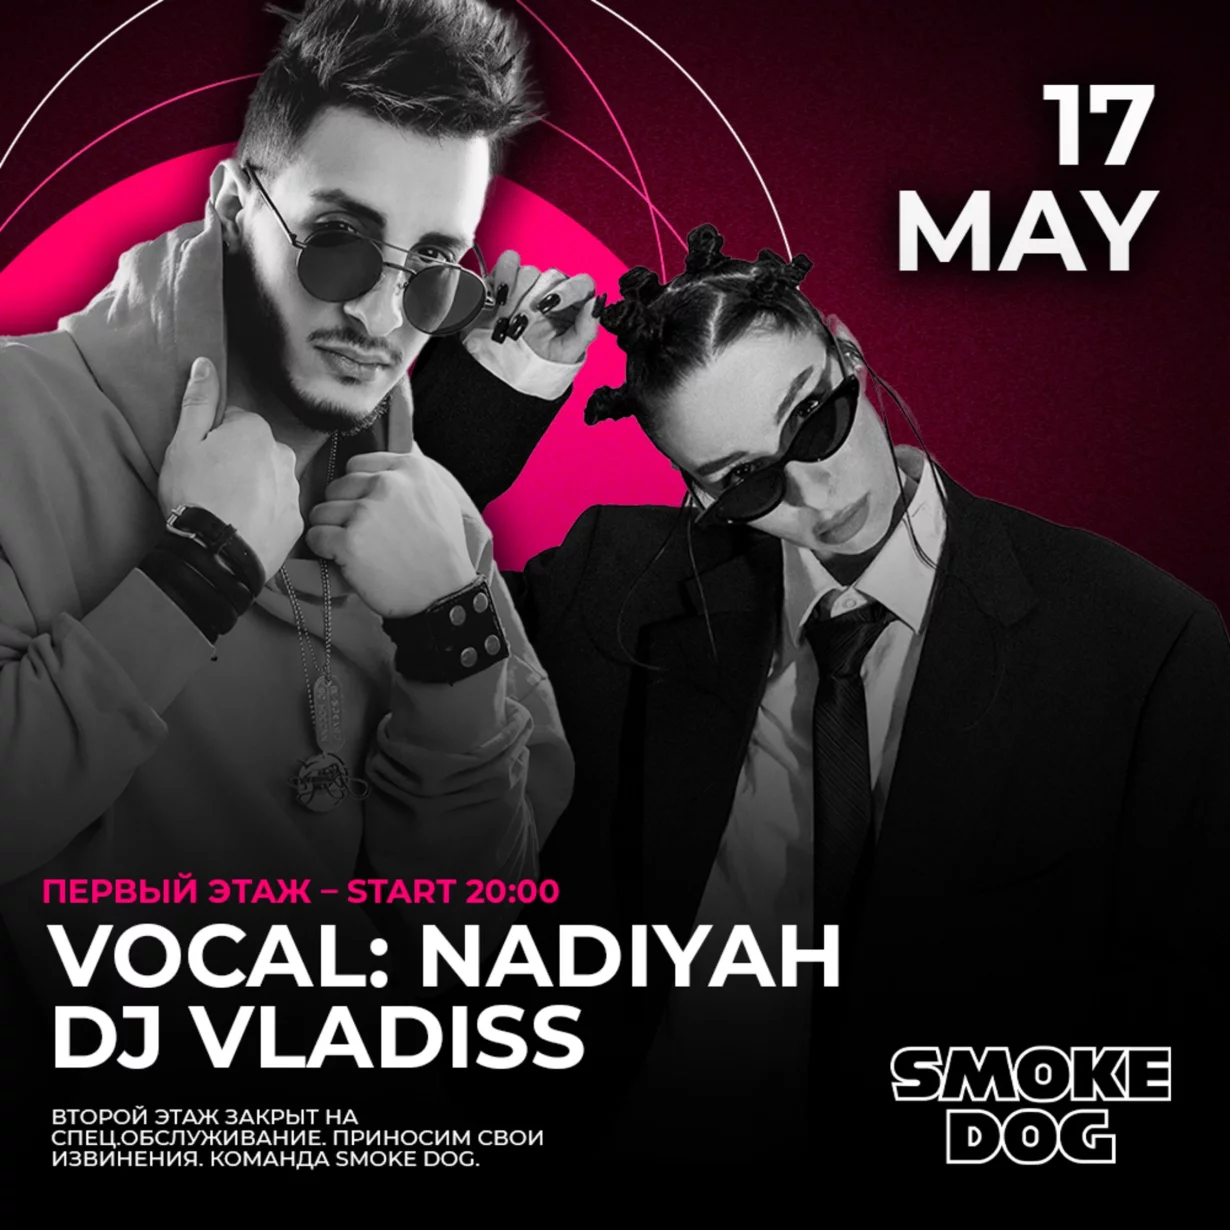 17 мая в 20:00 на первом этаже живая музыка от Nadiyah, а далее диджей сет DJ Vladiss